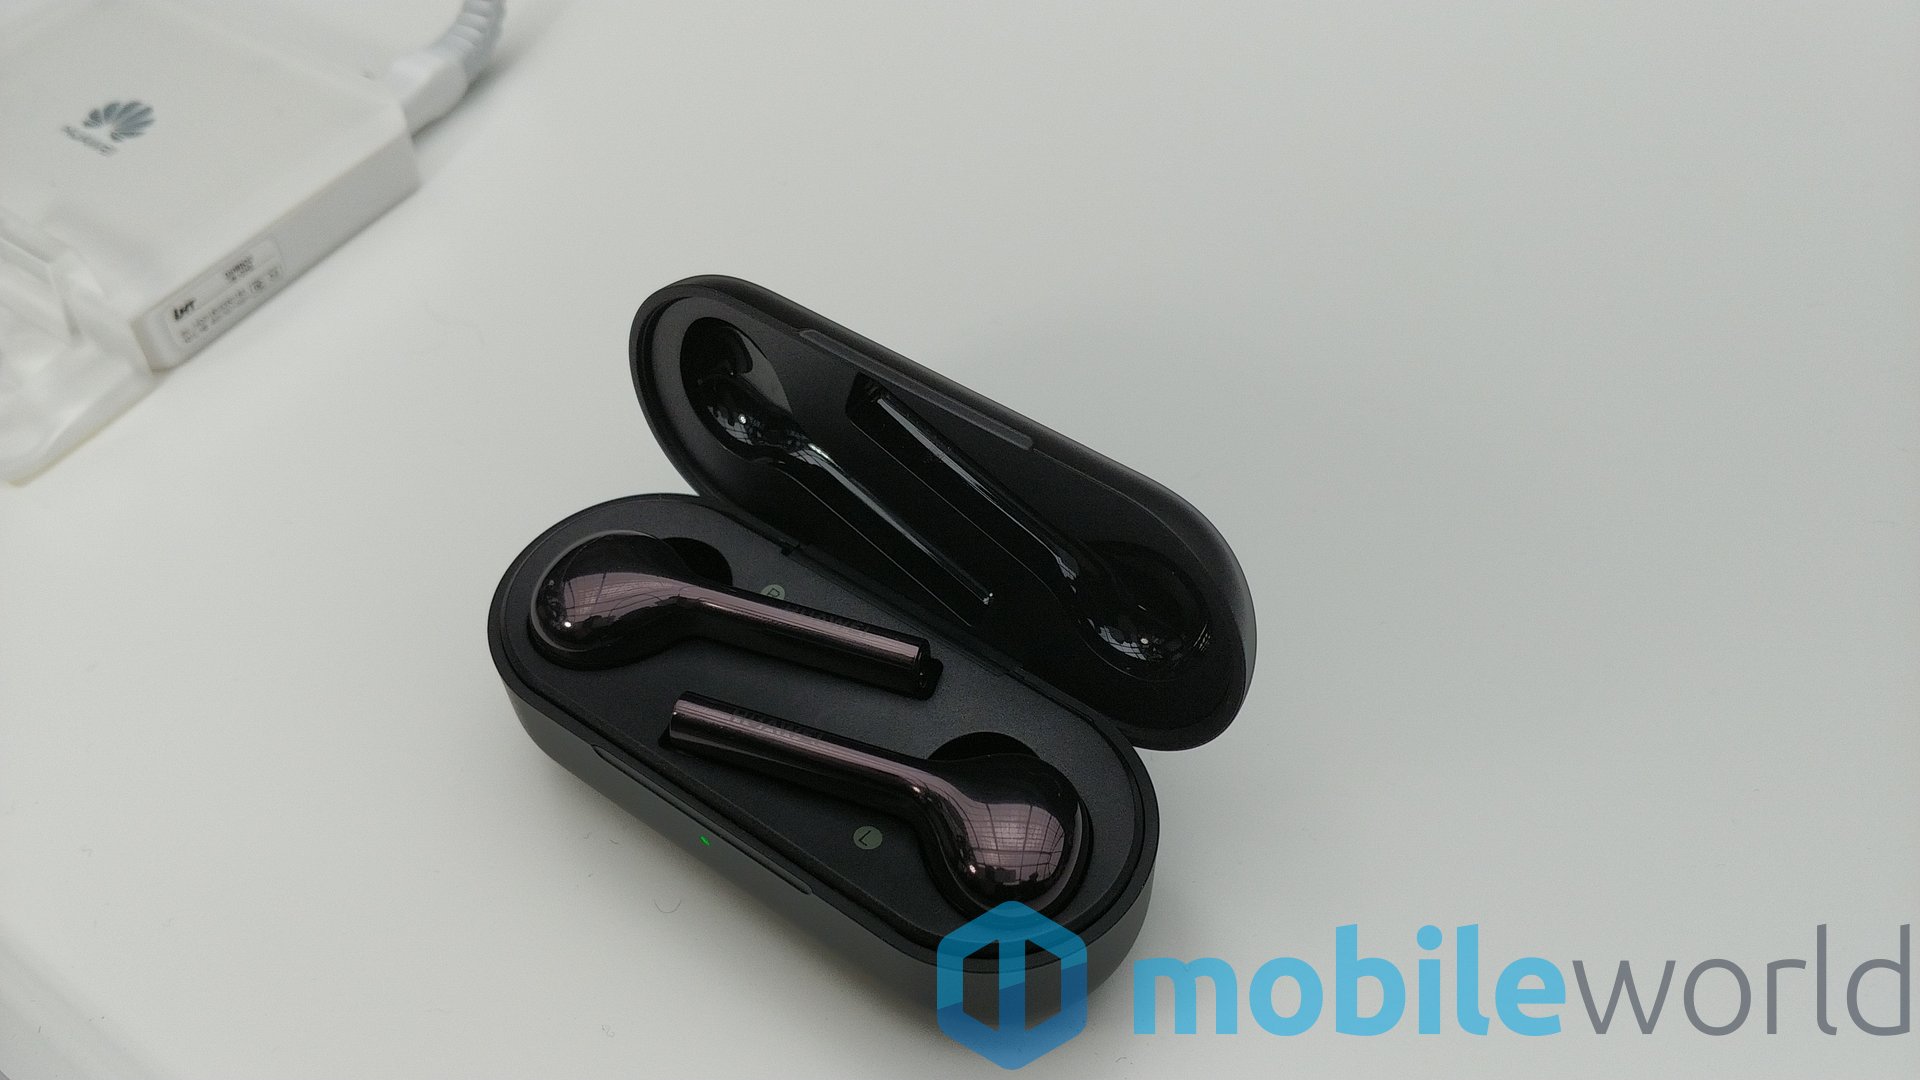 Huawei ra mắt
tai nghe không dây FreeBuds với 2 màu trắng và đen, thời pin
hơn gấp đôi Apple AirPods